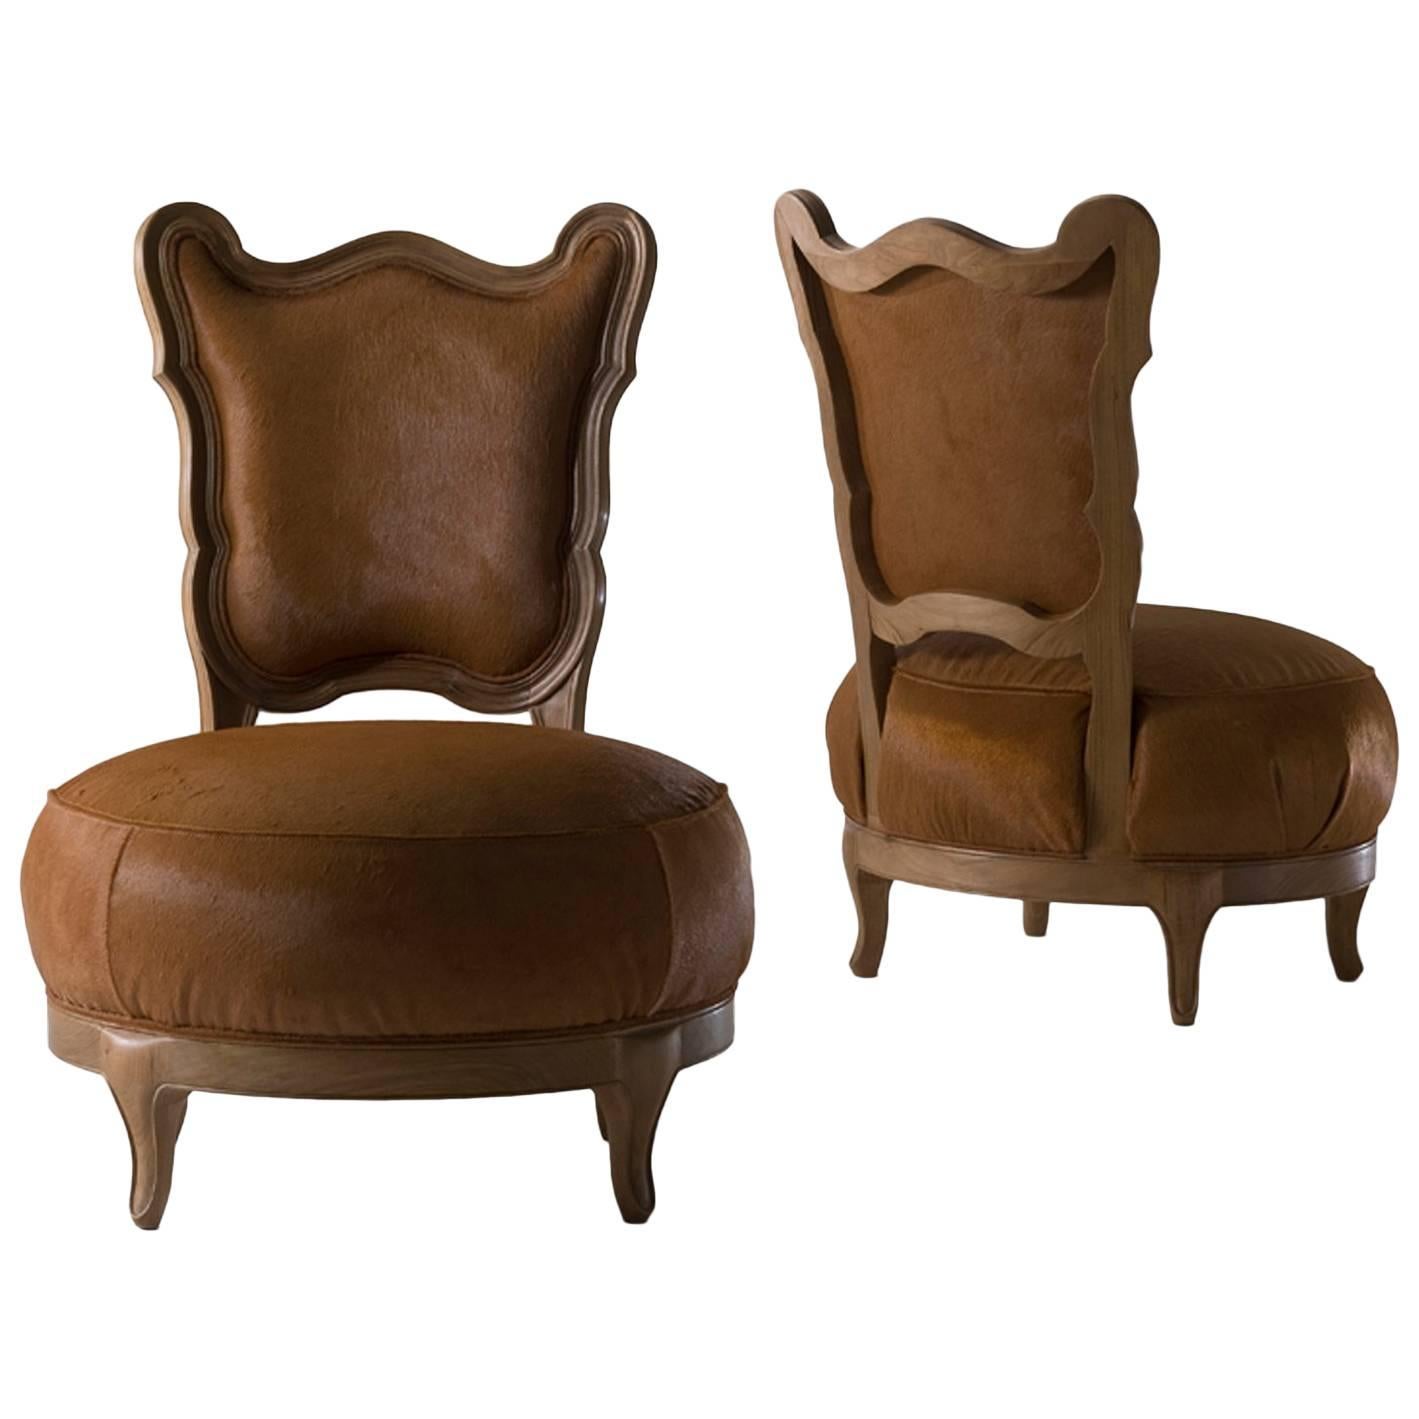 Gattone – Sessel aus massivem Nussbaumholz, entworfen von Nigel Coates